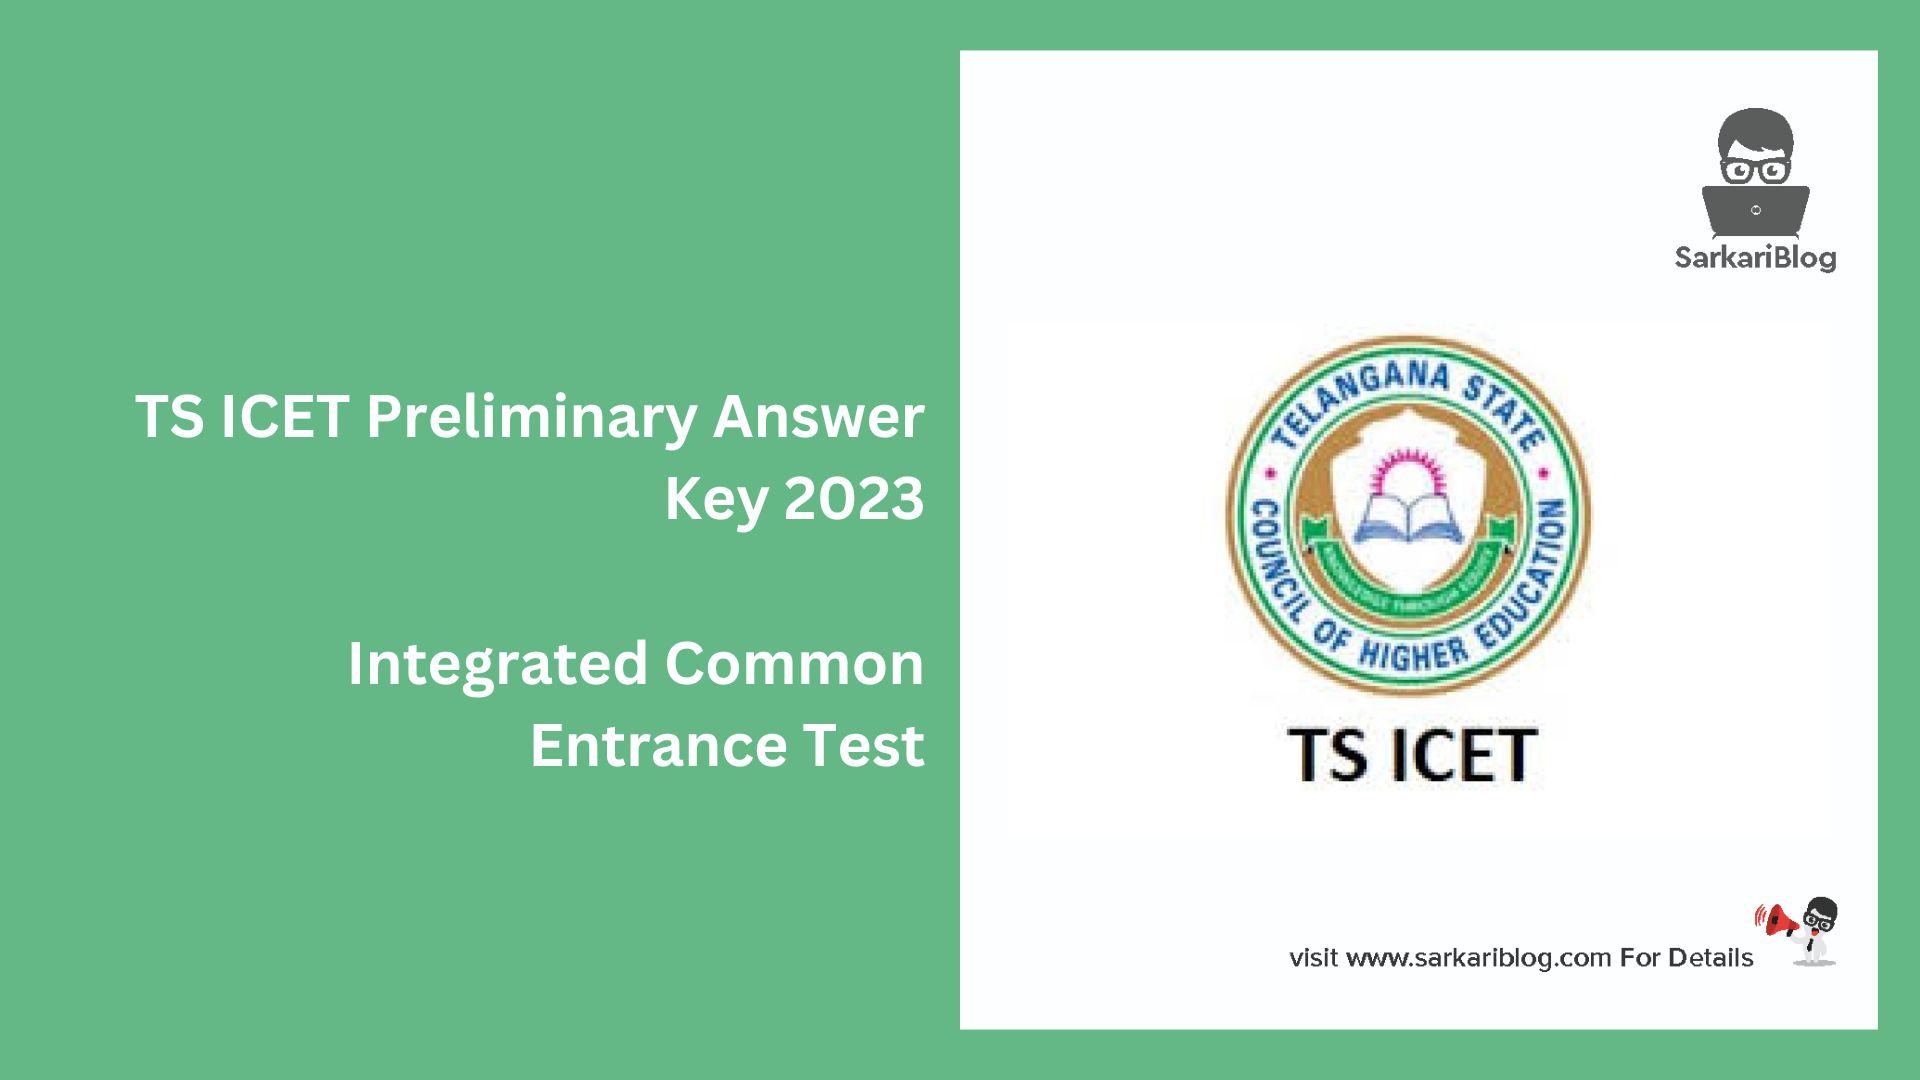 TS ICET Preliminary Answer Key 2023